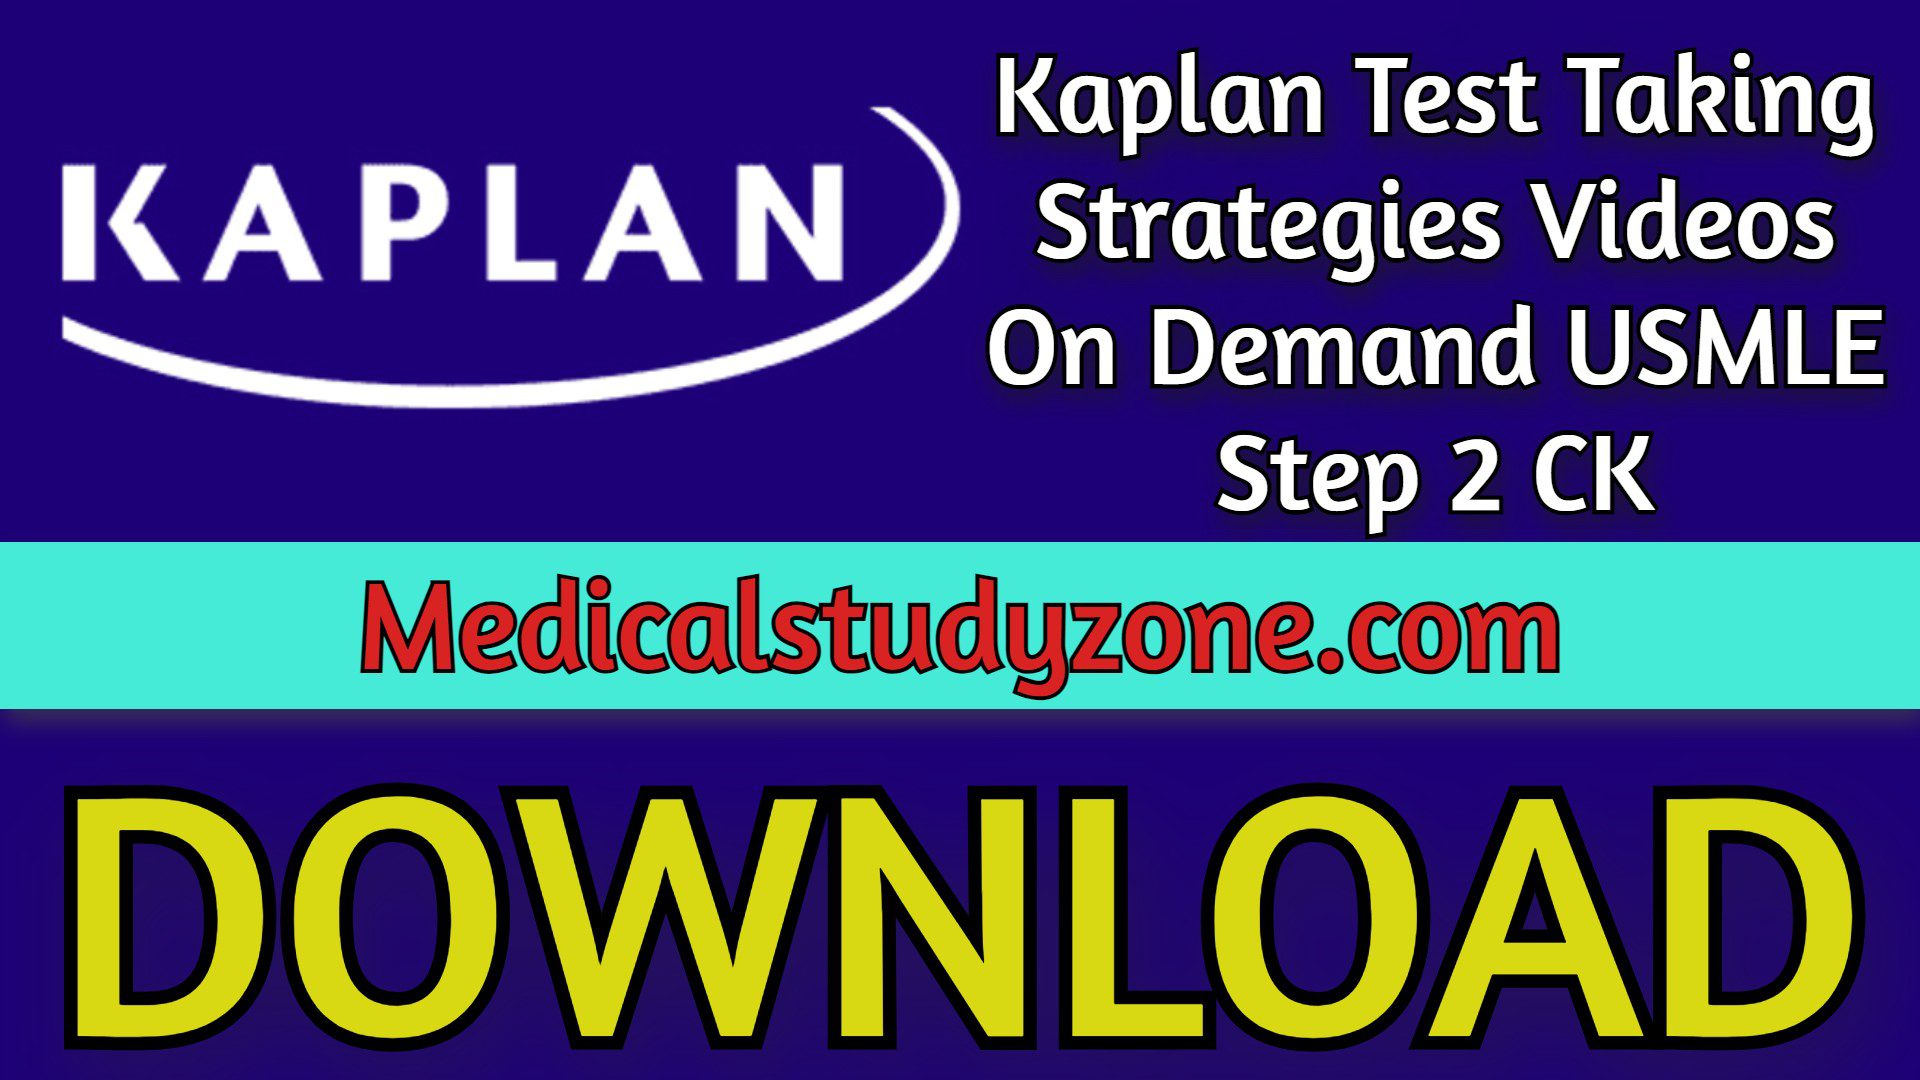 Kaplan Test Taking Strategies Videos 2022 On Demand USMLE Step 2 CK Free Download